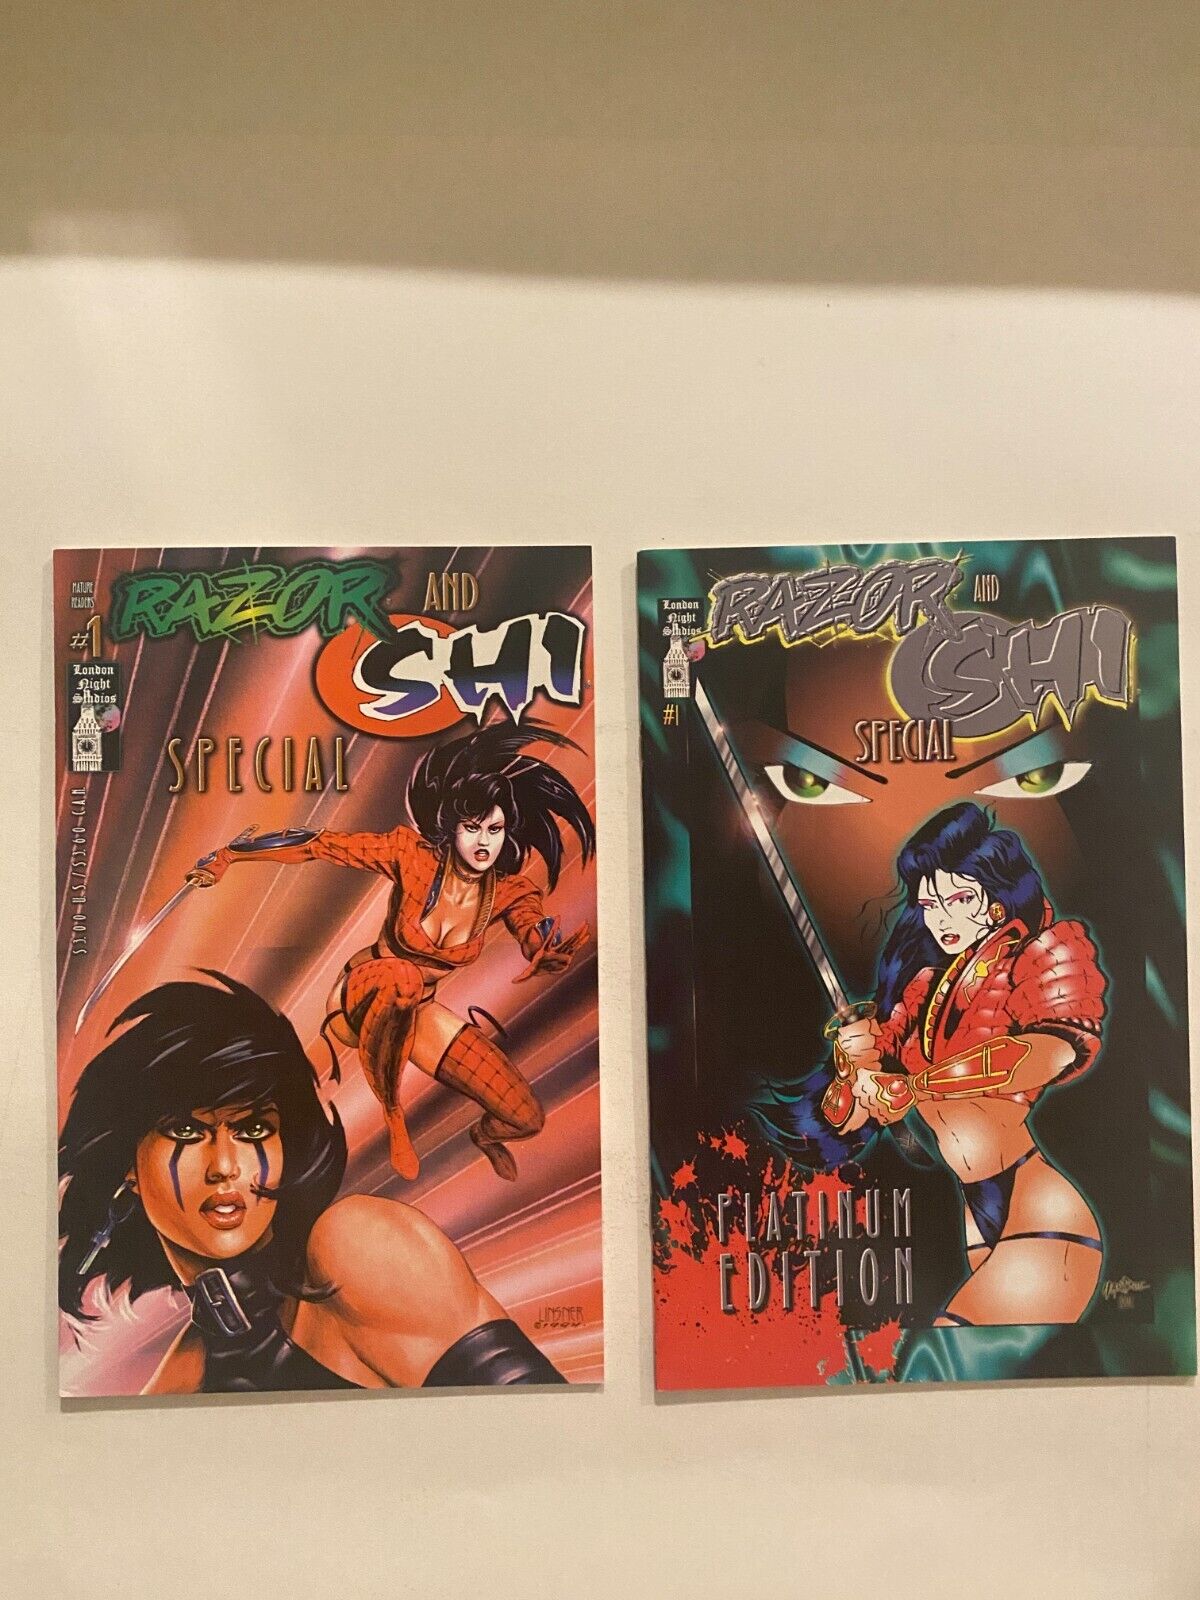 RAZOR - SHI SPECIAL # 1  1994  PLATINUM Variant + Regular Edition  2 Issues NM-